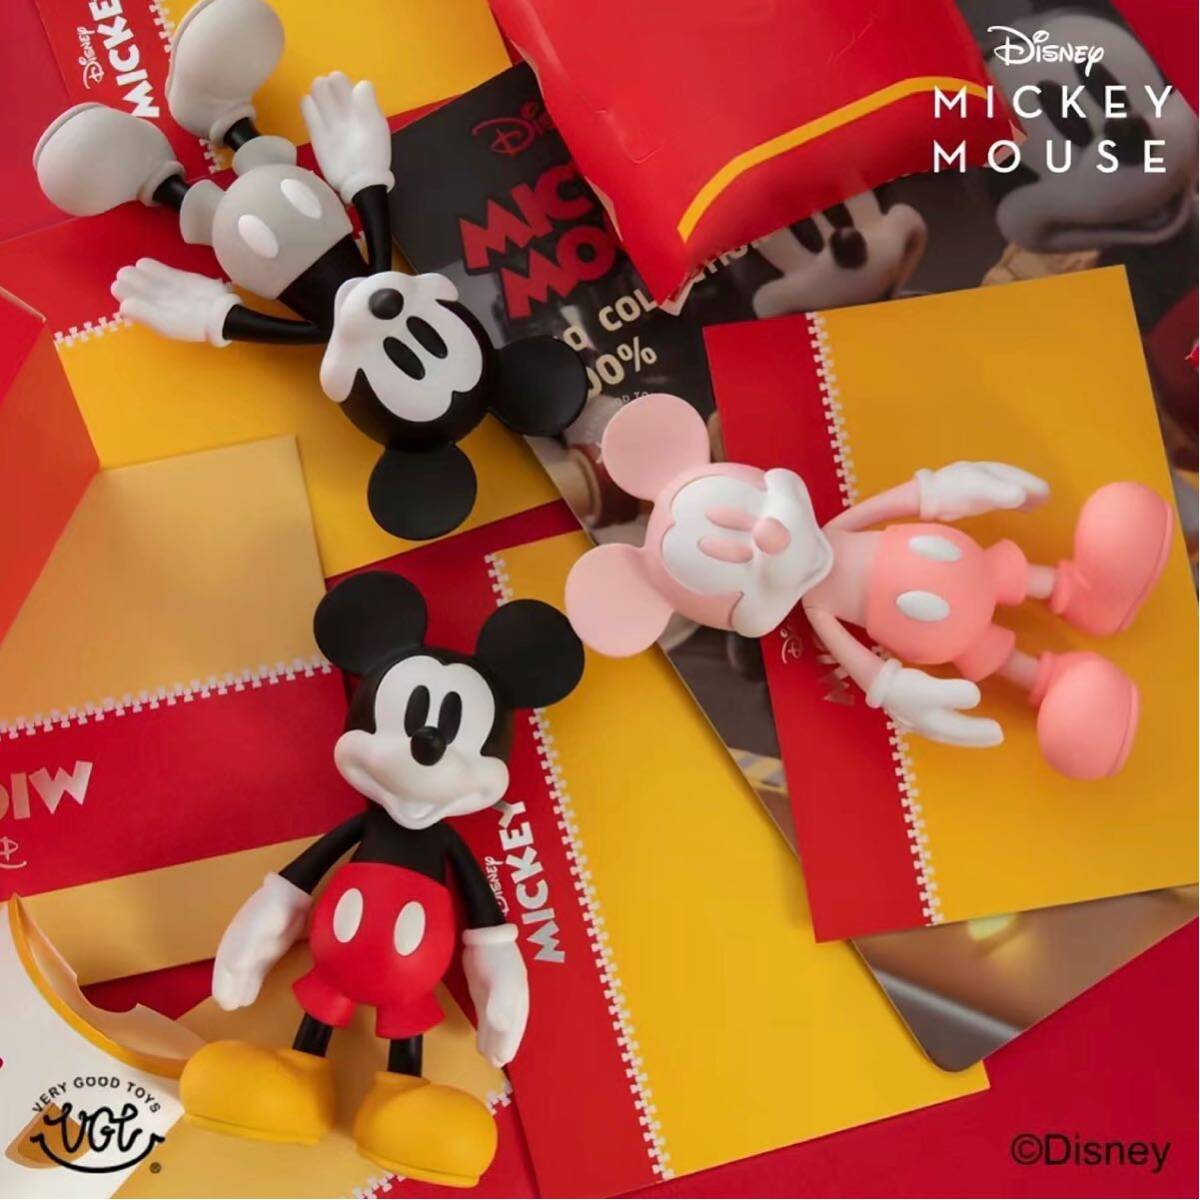 ego* Mickey Mouse 200% Disney передвижной фигурка ограниченный товар игрушка подарок pop культура искусство игрушка стандартный товар 